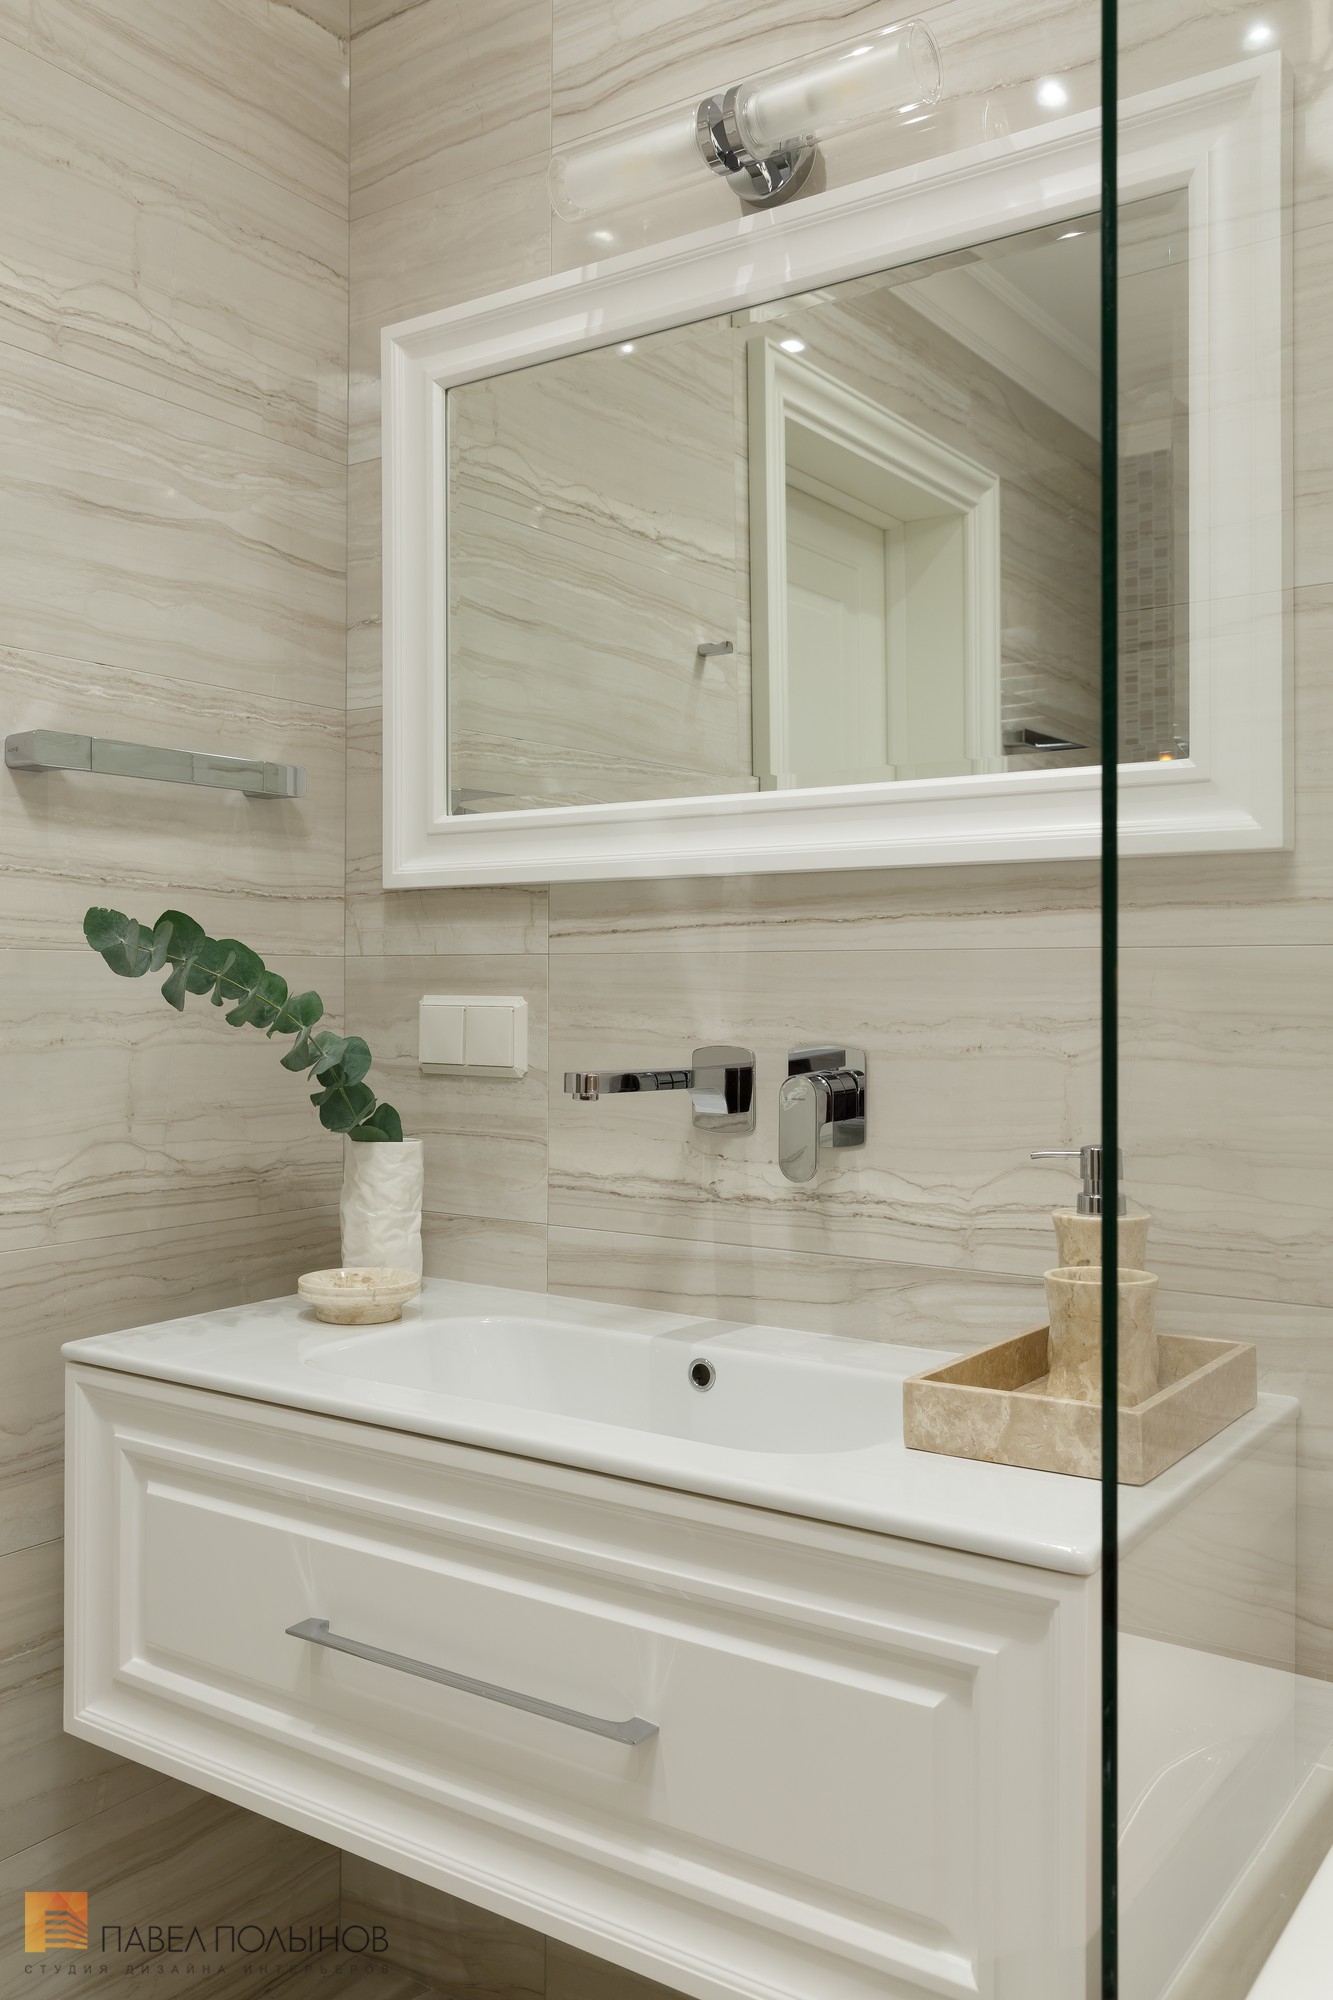 Фото отделка ванной комнаты из проекта «Отделка квартиры по дизайн-проекту, ЖК «Академ-Парк», 107 кв.м.»